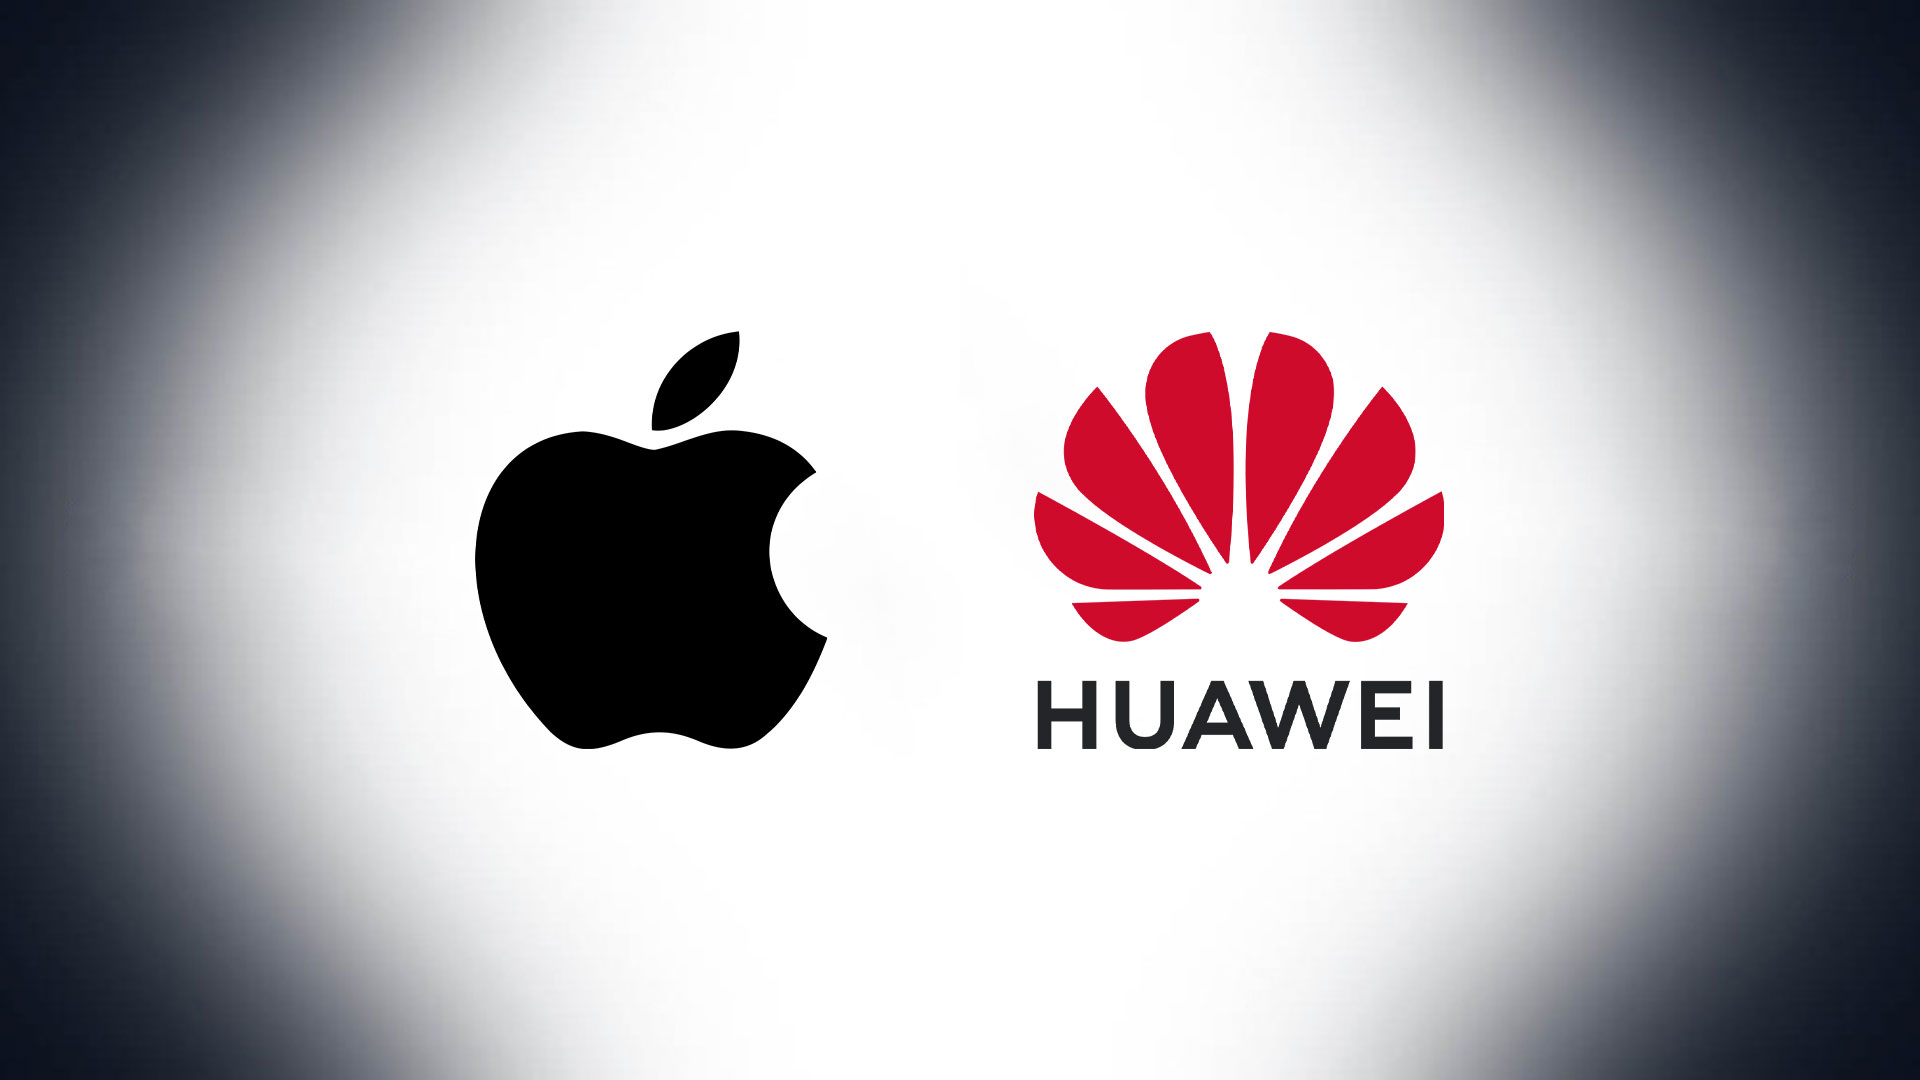 overstroming louter Zenuw Apple is het meest waardevolle merk ter wereld, maar Huawei maakt geen  grapje - GizChina.it